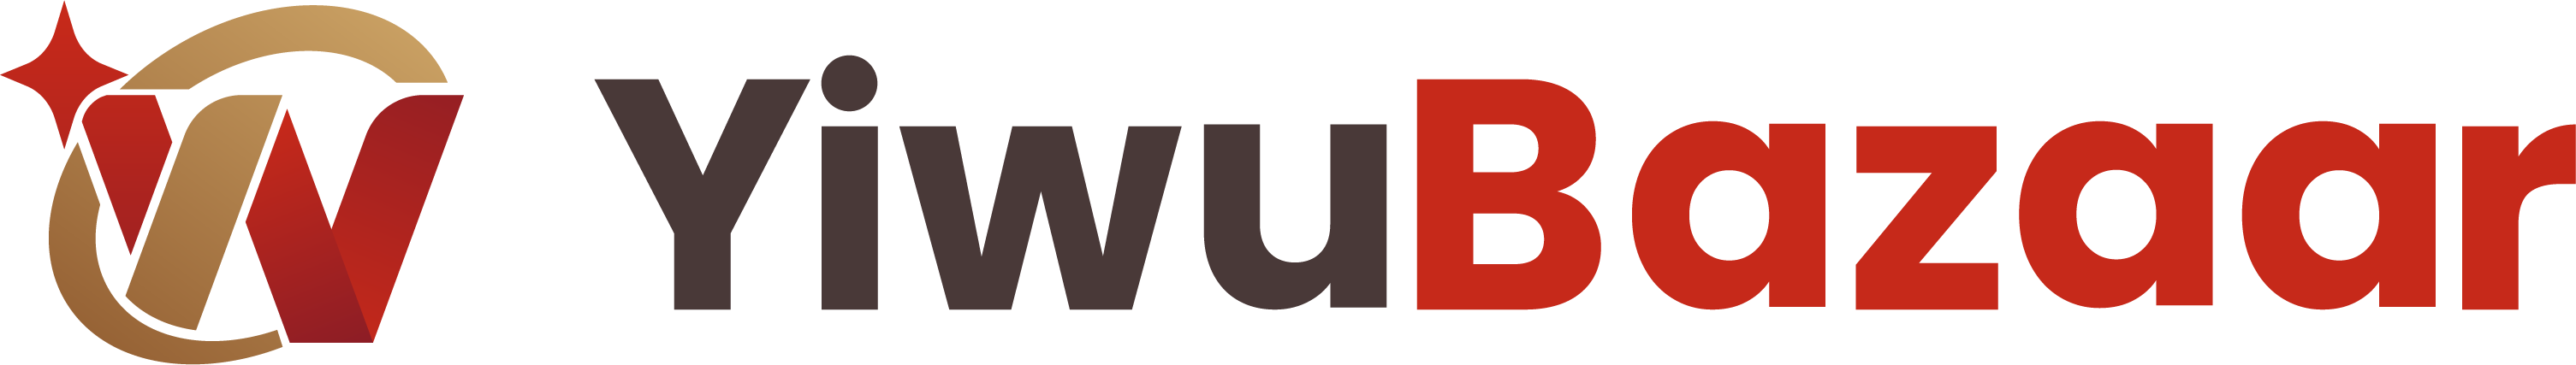 yiwubazaar logo 3